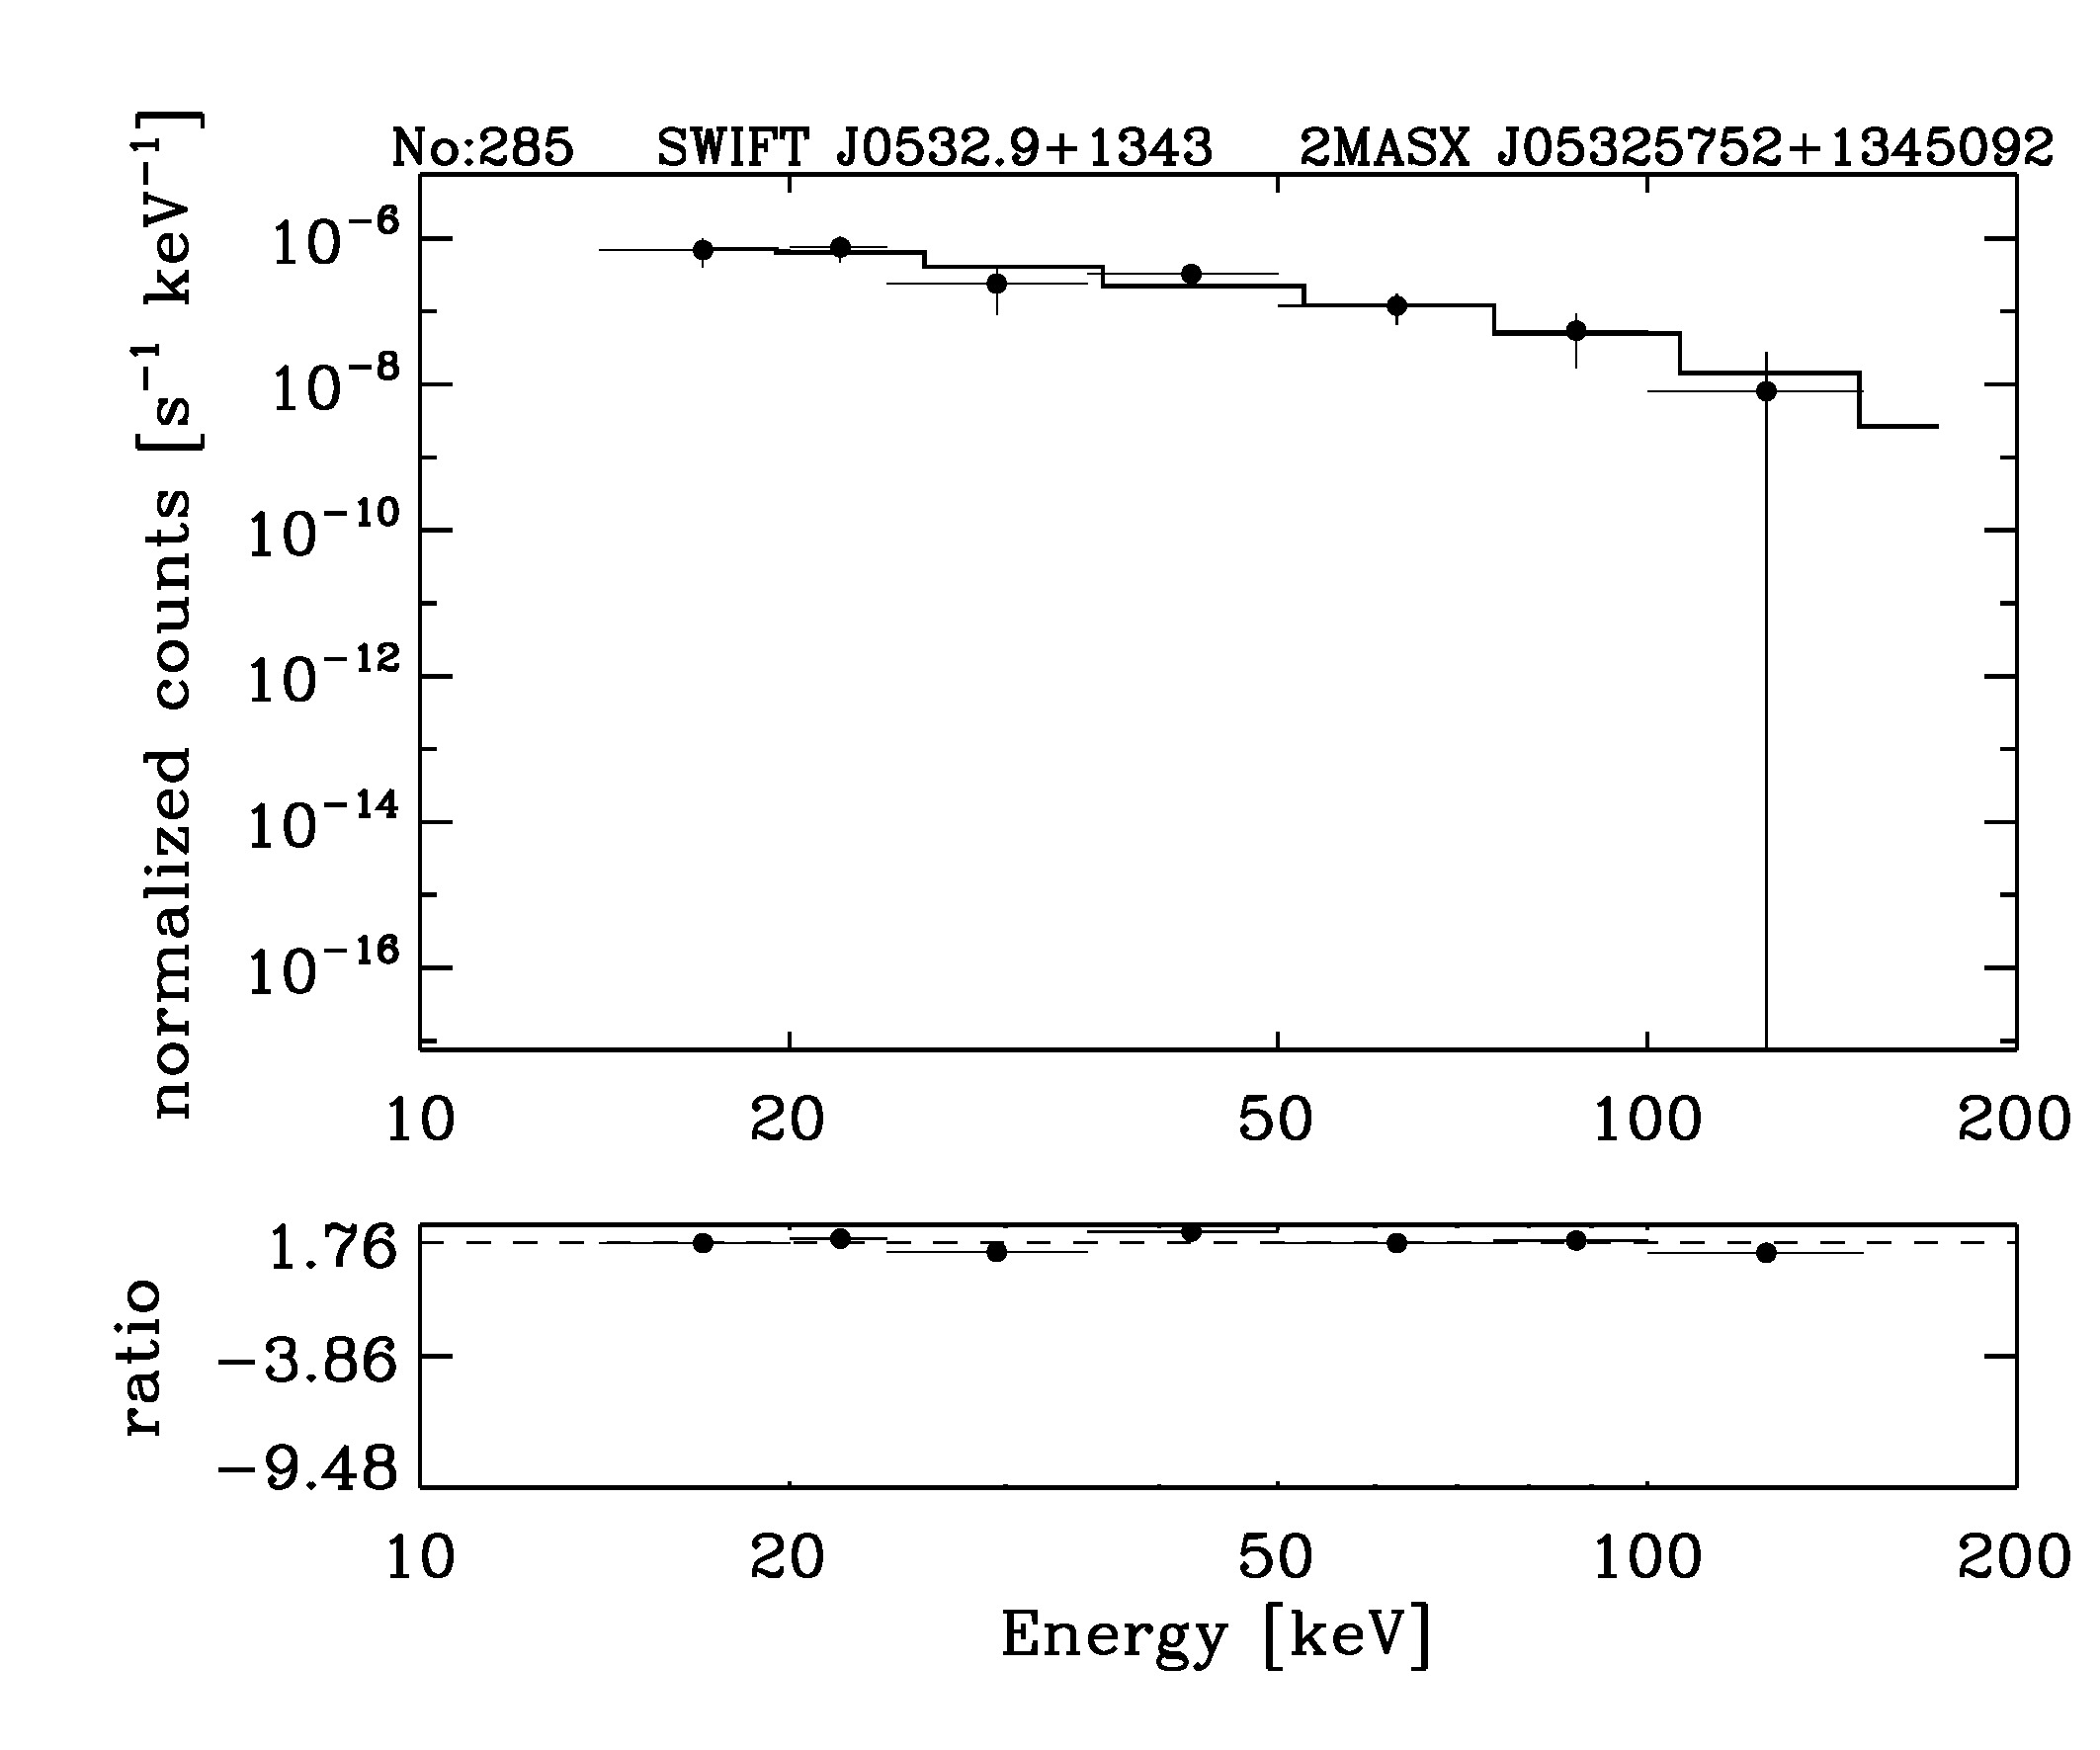 BAT Spectrum for SWIFT J0532.9+1343